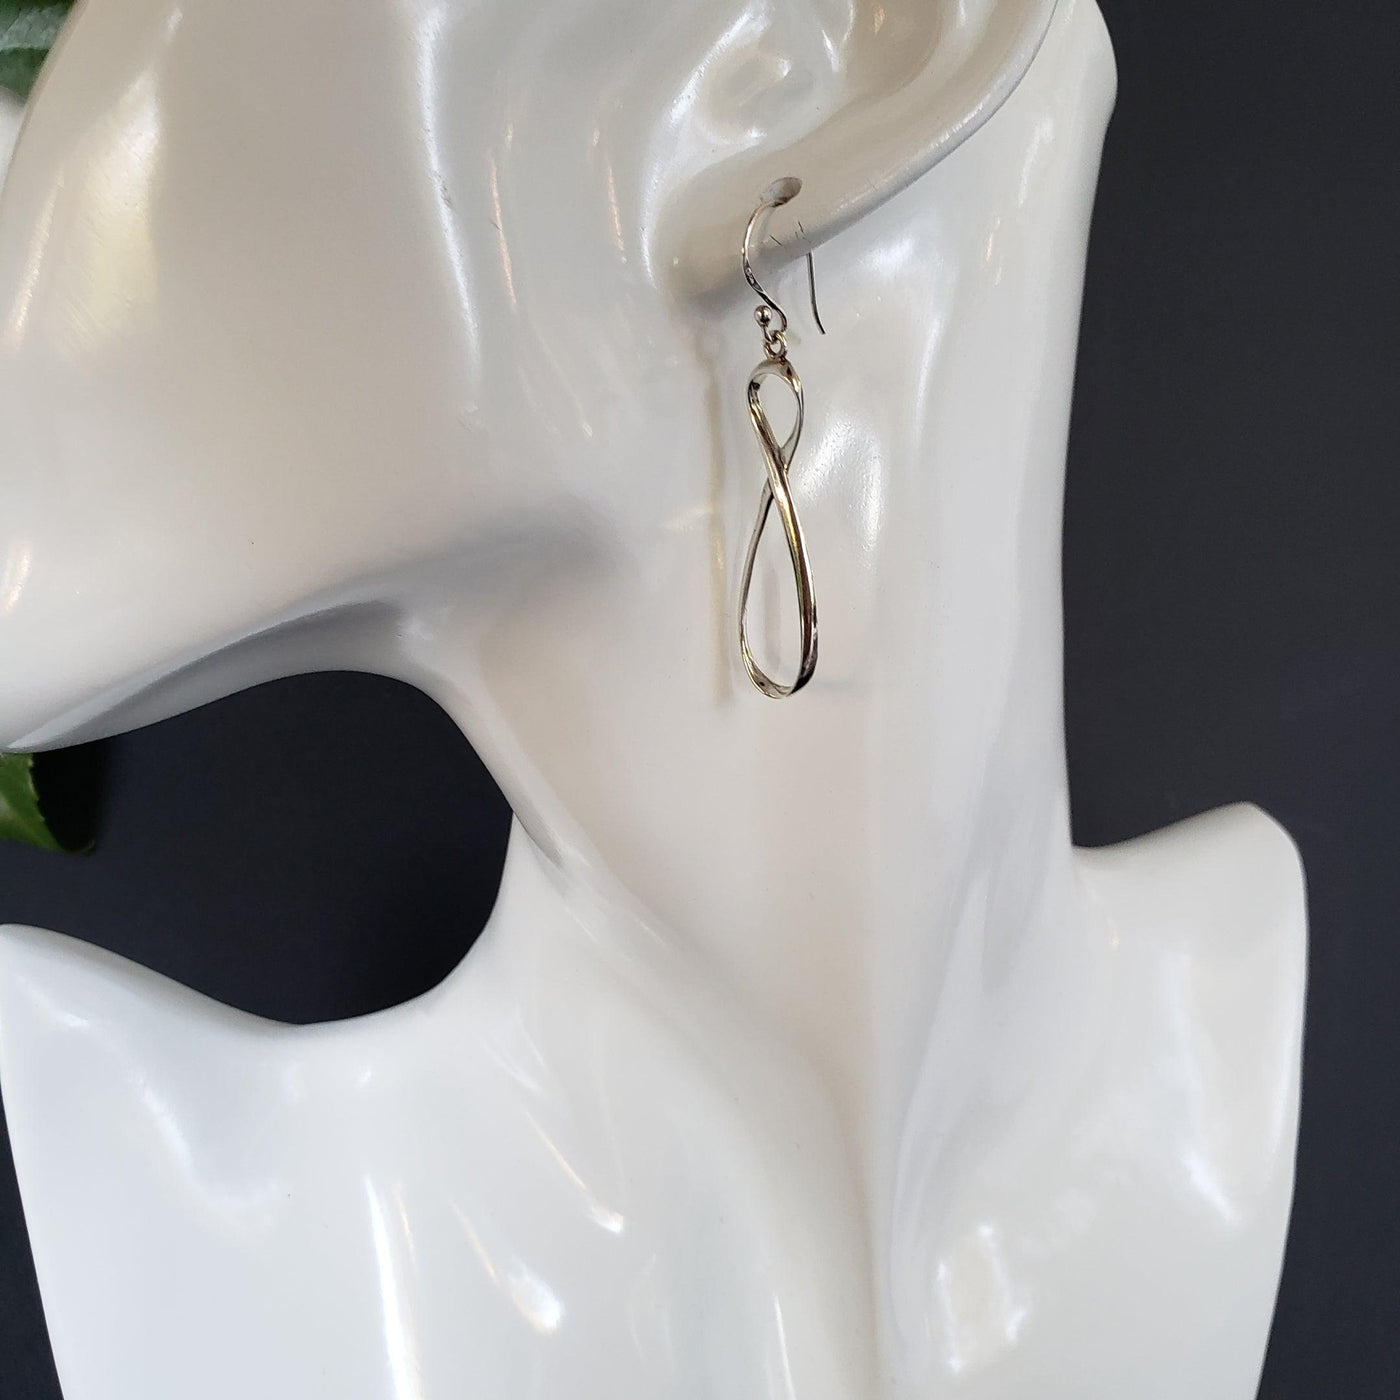 Figure 8 Silver earrings